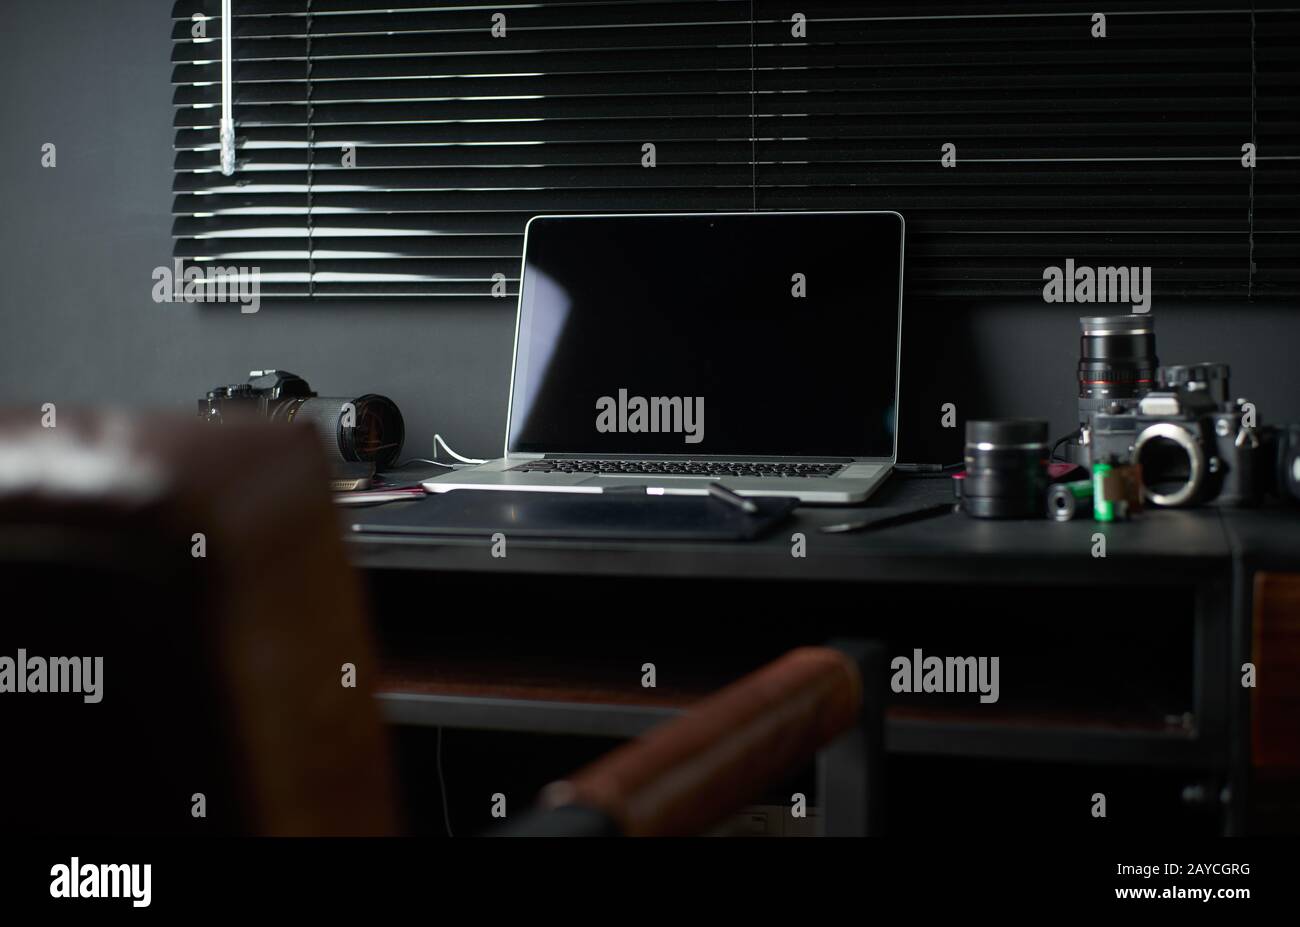 Espacio de trabajo sobre mesa negra de un fotógrafo o diseñador con portátil Foto de stock